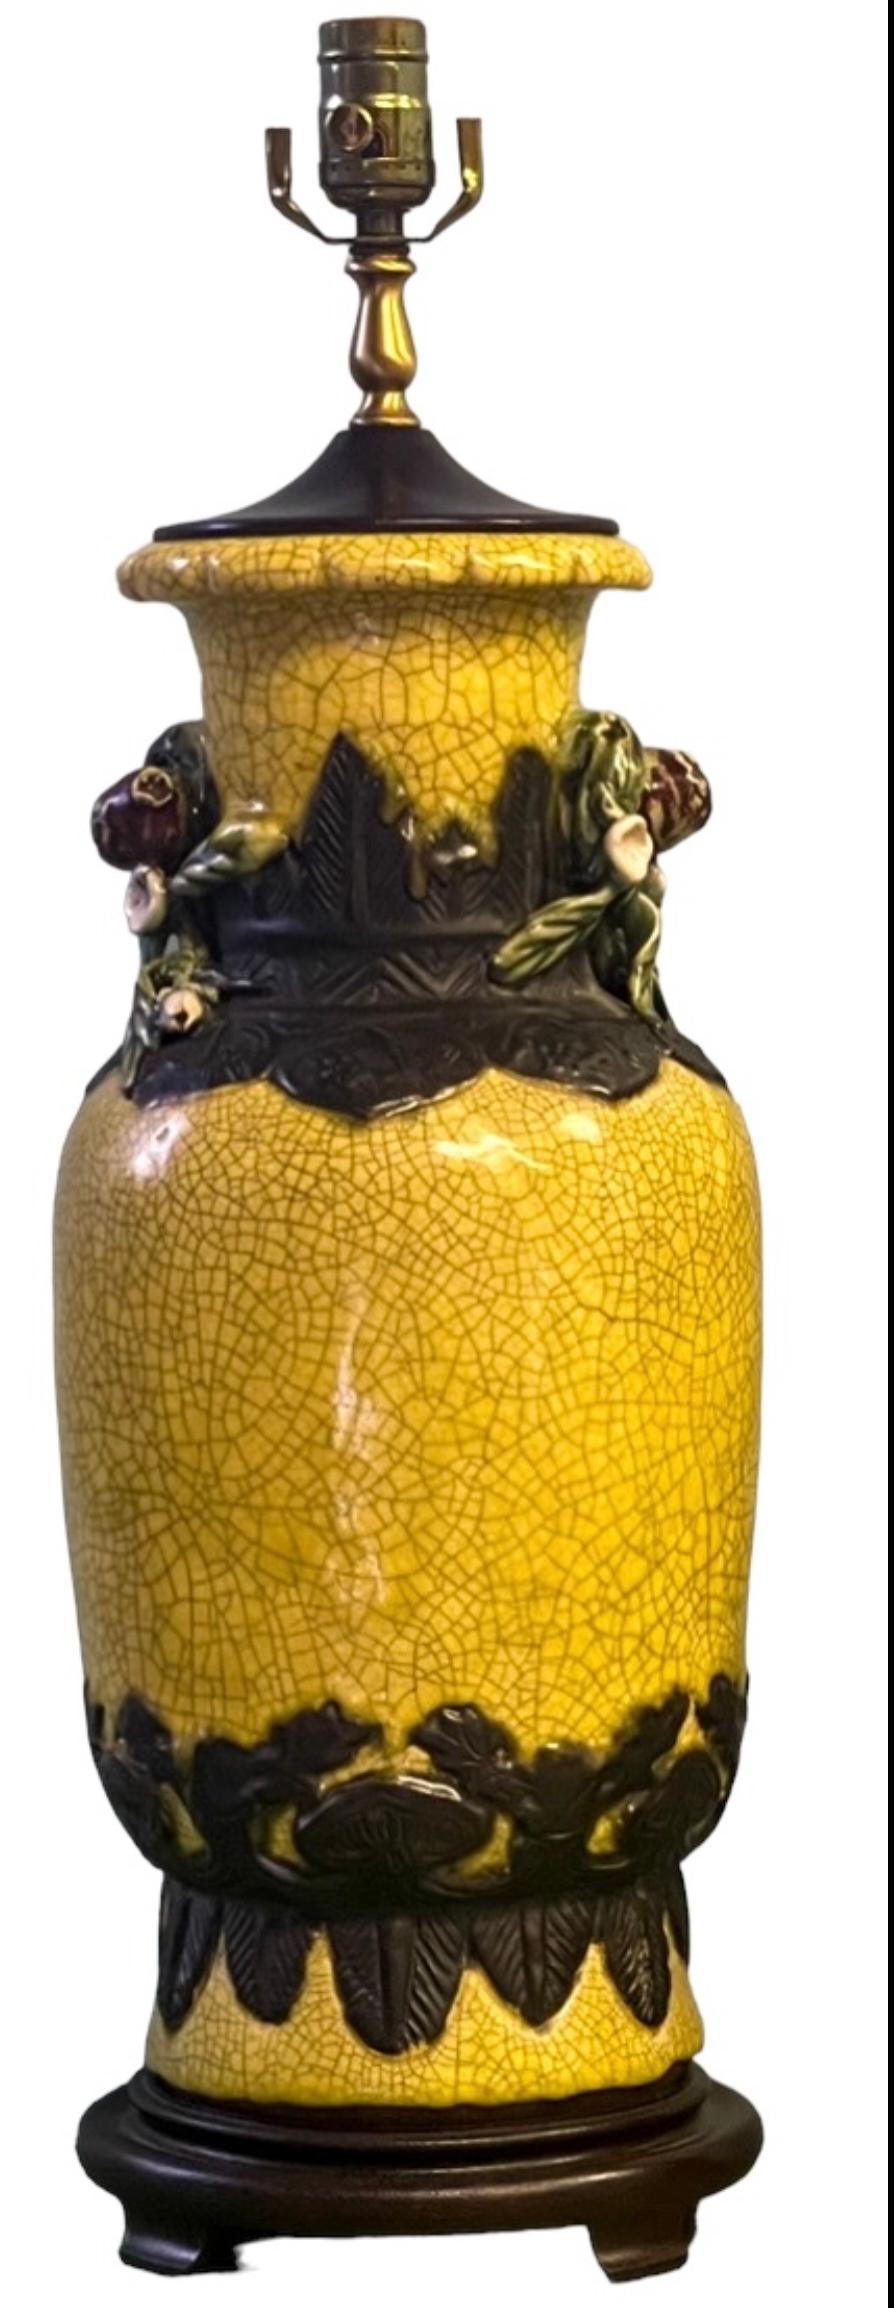 Il s'agit d'une belle paire de lampes de table en forme de jarre de style export chinois. Ils sont en céramique avec une finition brillante en berceau marigold. La paire est en état de marche.